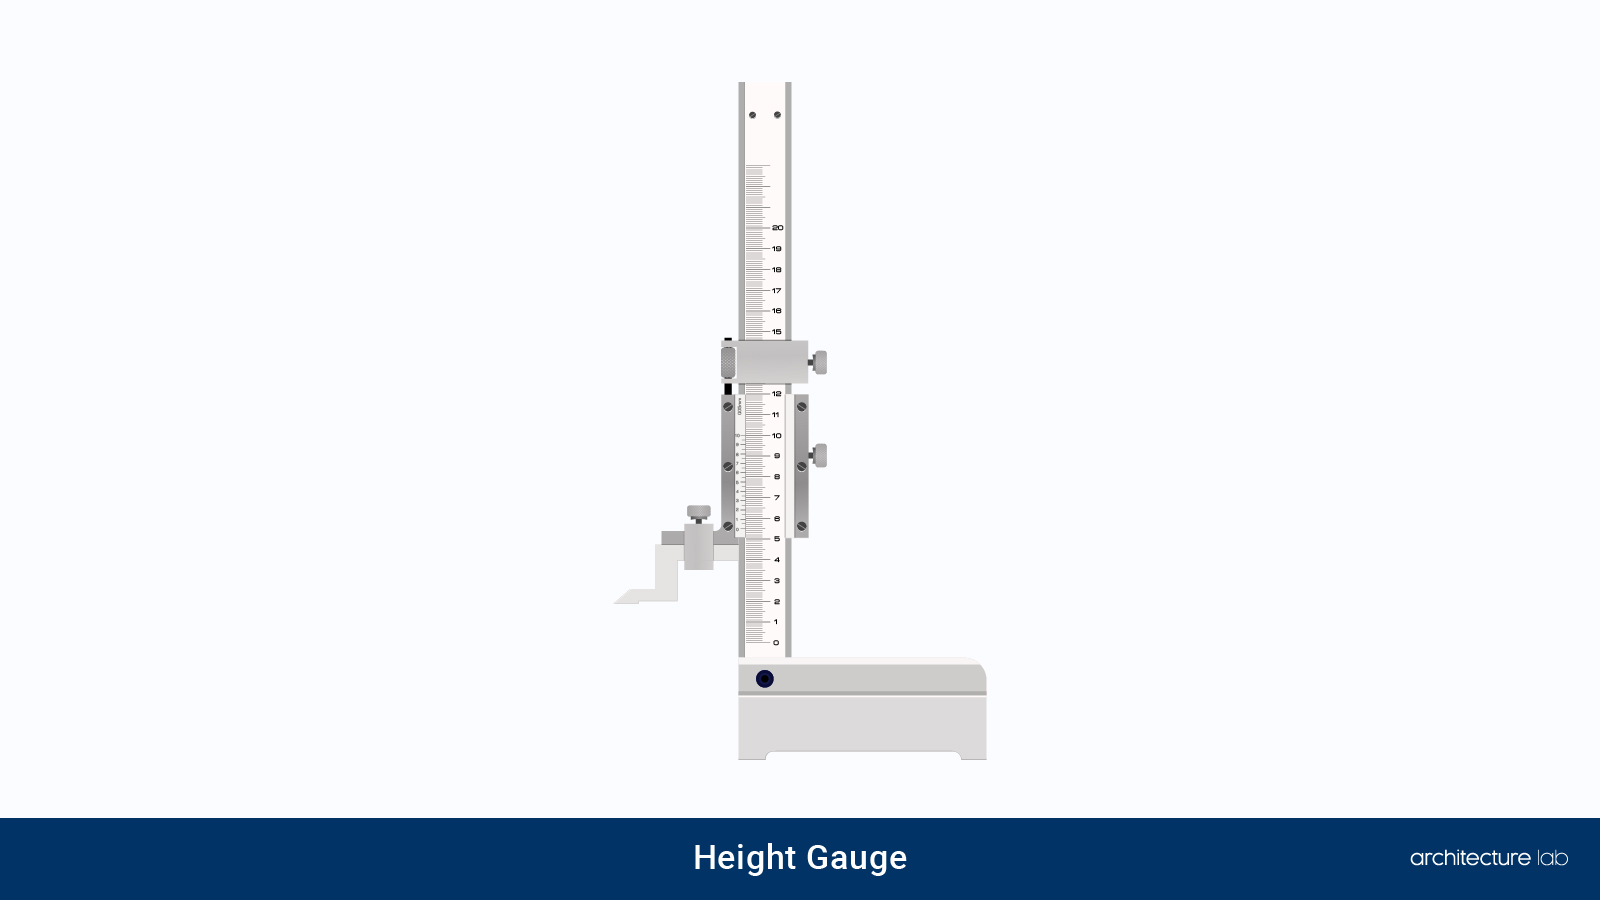 27. Height gauge